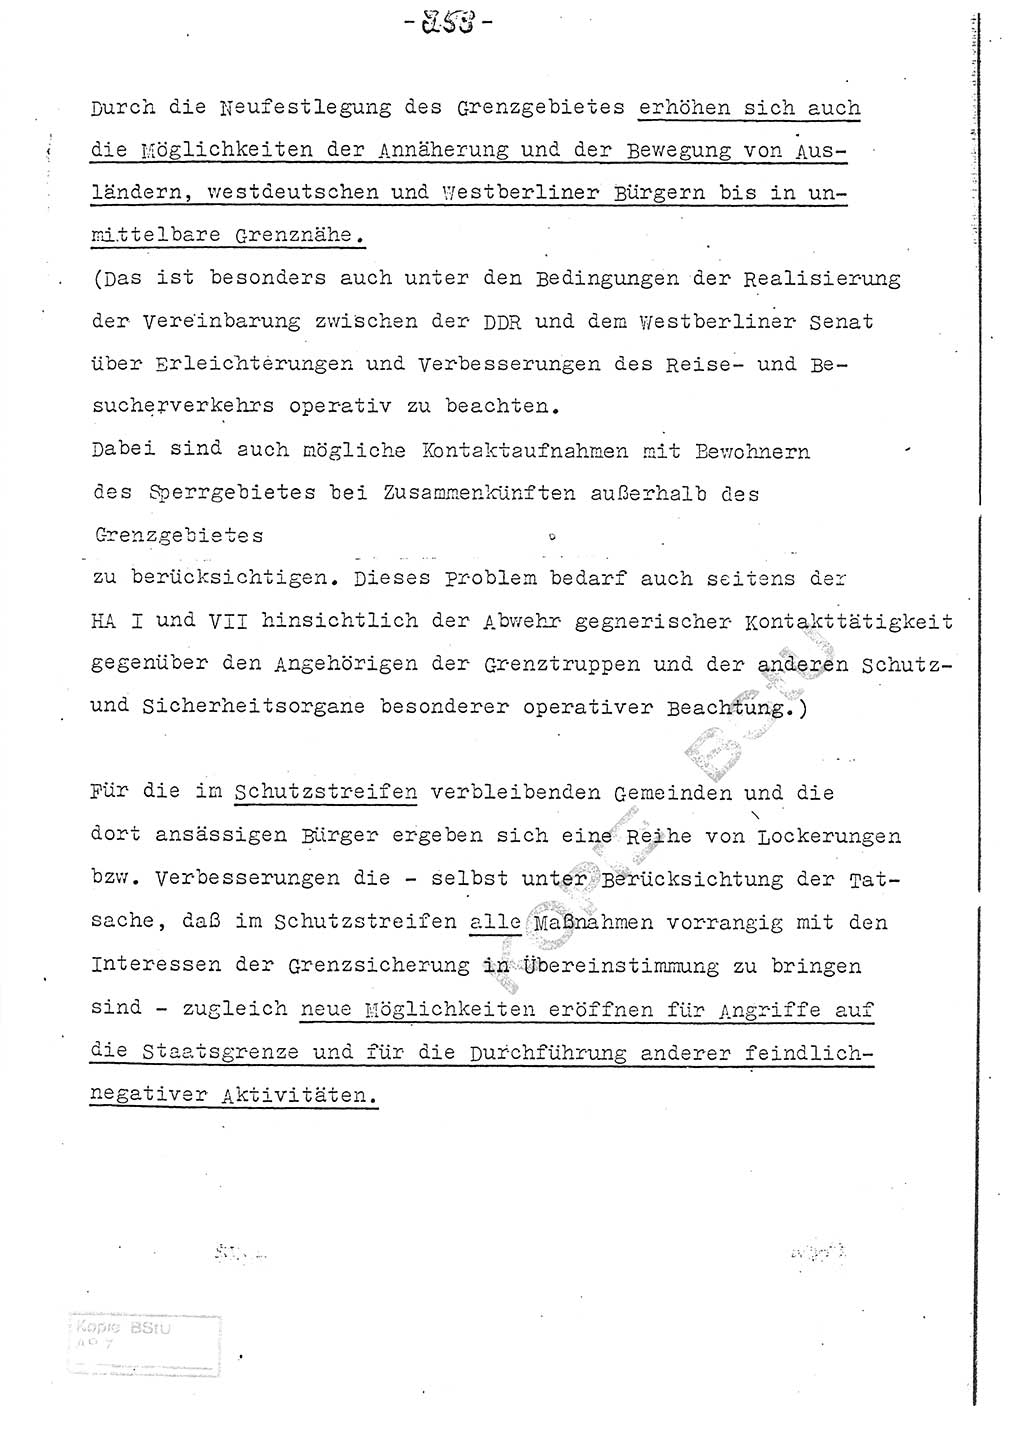 Referat (Entwurf) des Genossen Minister (Generaloberst Erich Mielke) auf der Dienstkonferenz 1972, Ministerium für Staatssicherheit (MfS) [Deutsche Demokratische Republik (DDR)], Der Minister, Geheime Verschlußsache (GVS) 008-150/72, Berlin 25.2.1972, Seite 253 (Ref. Entw. DK MfS DDR Min. GVS 008-150/72 1972, S. 253)